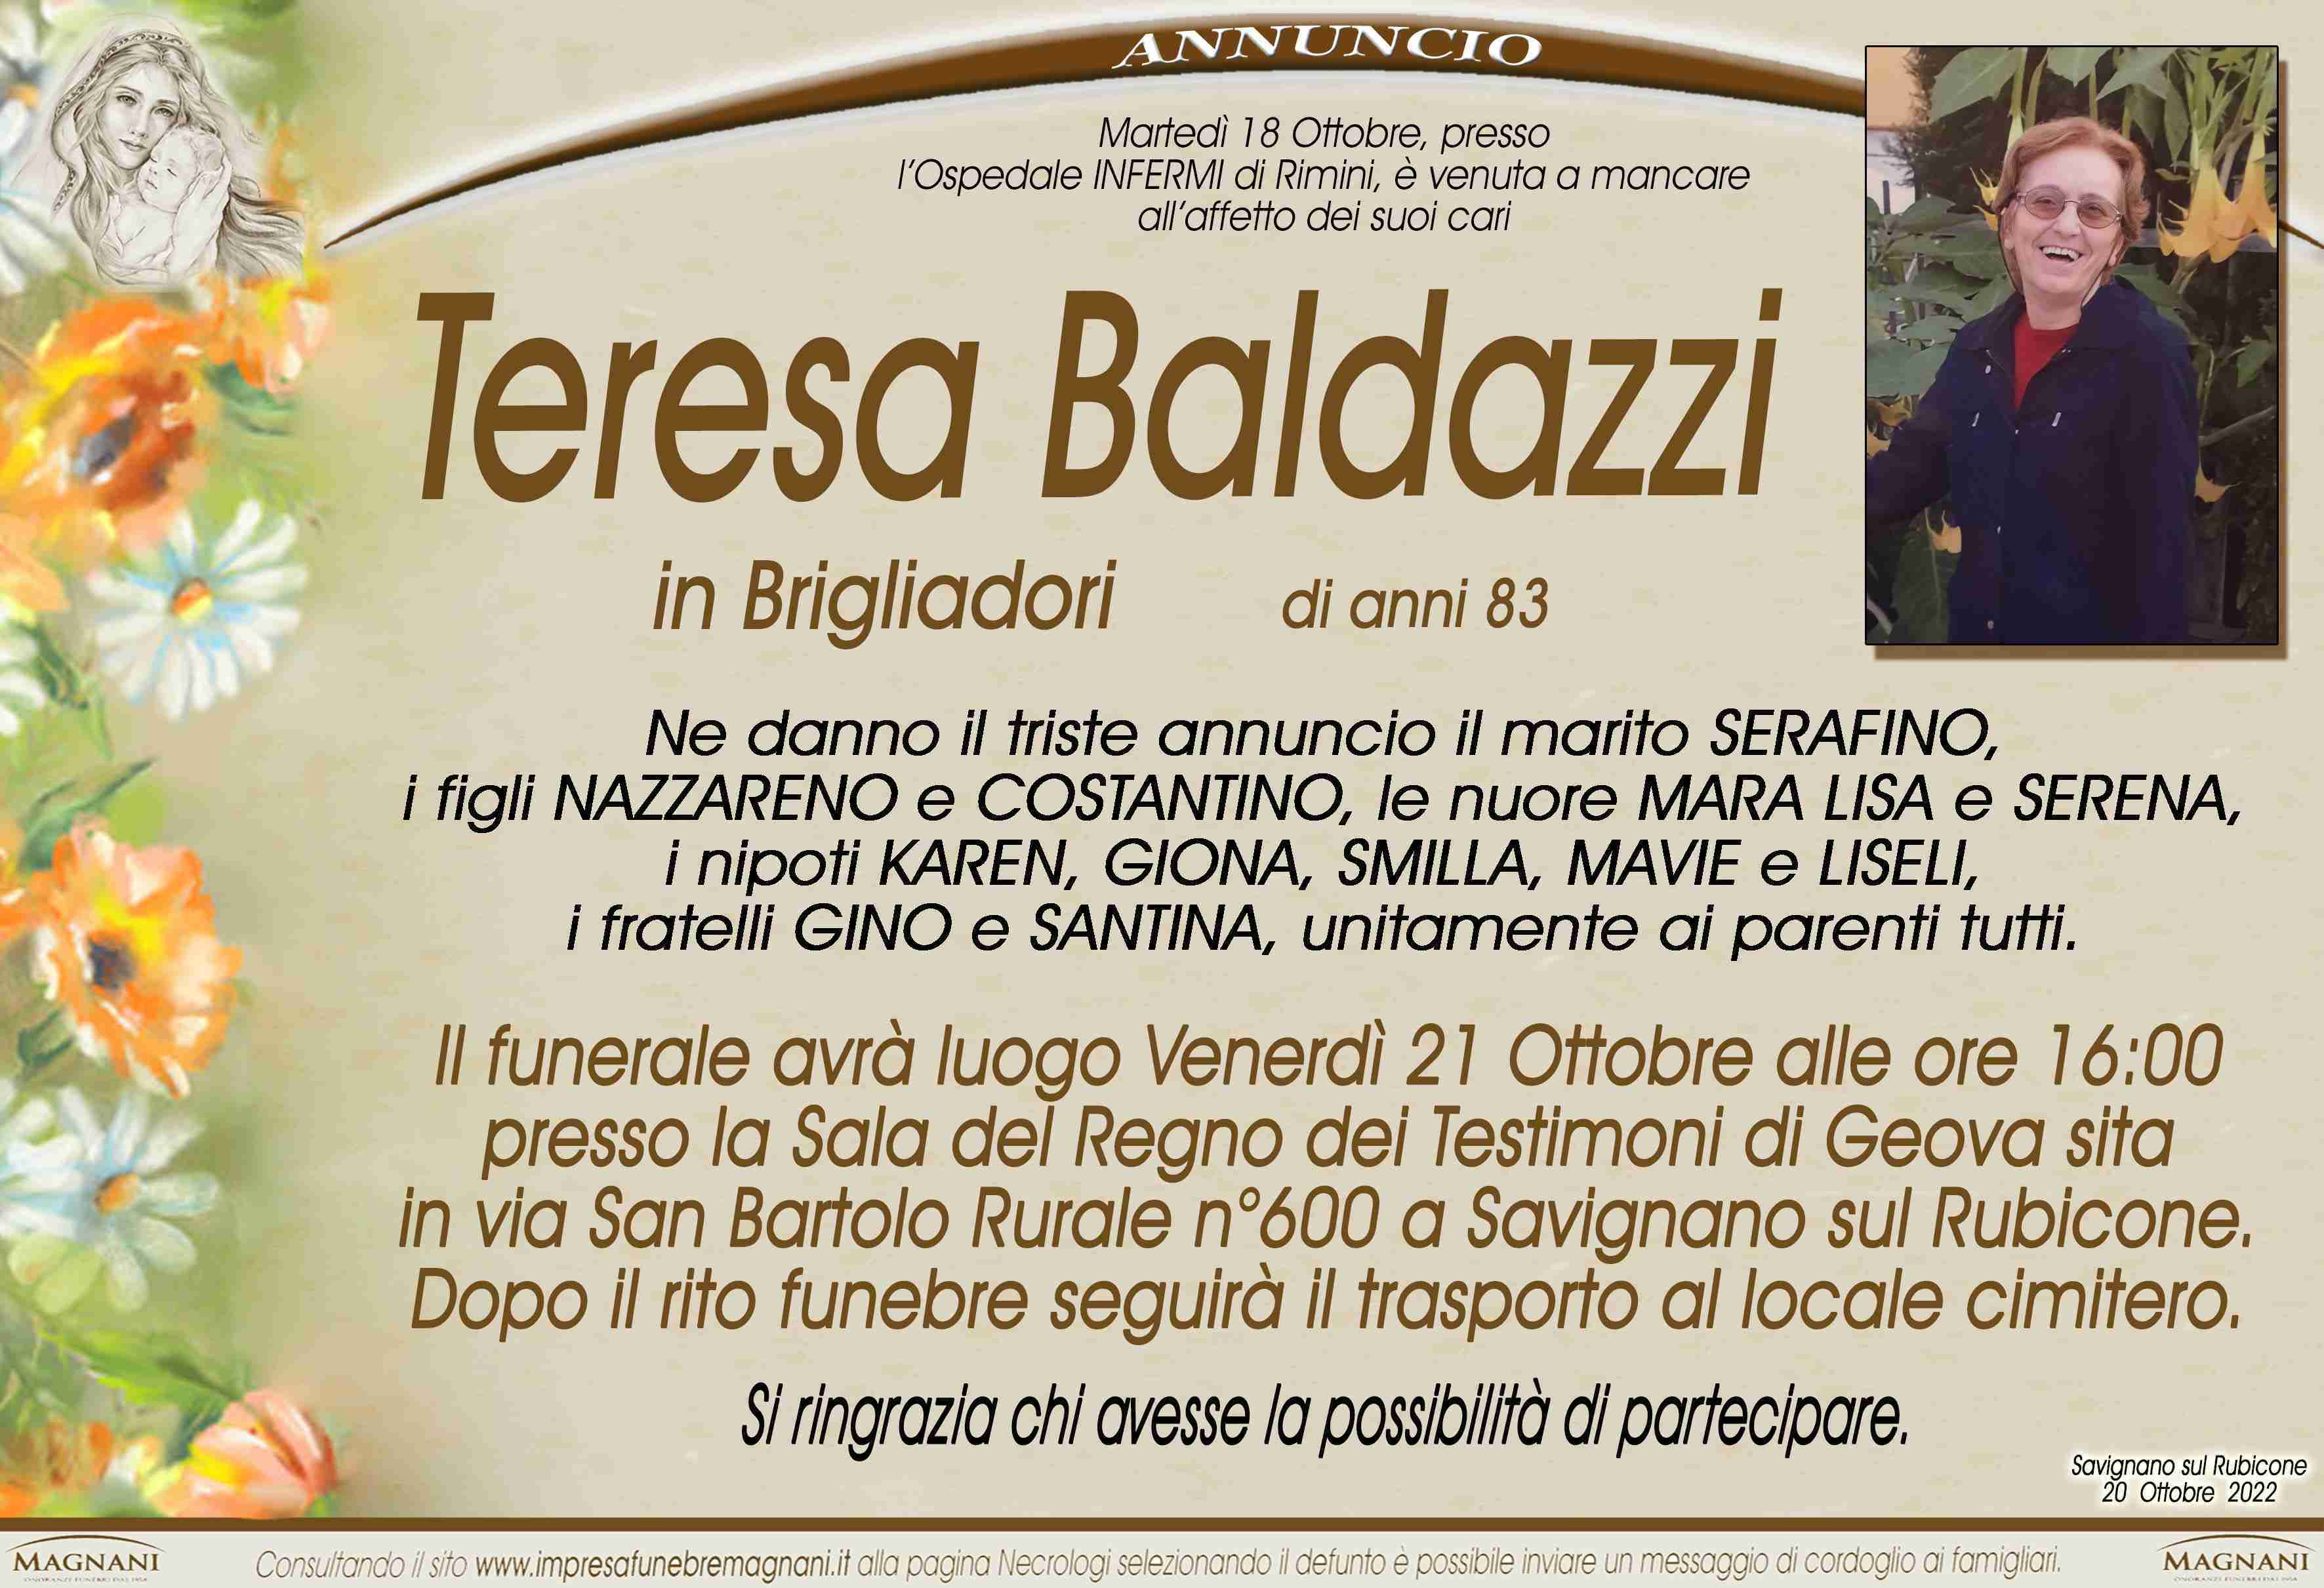 Teresa Baldazzi